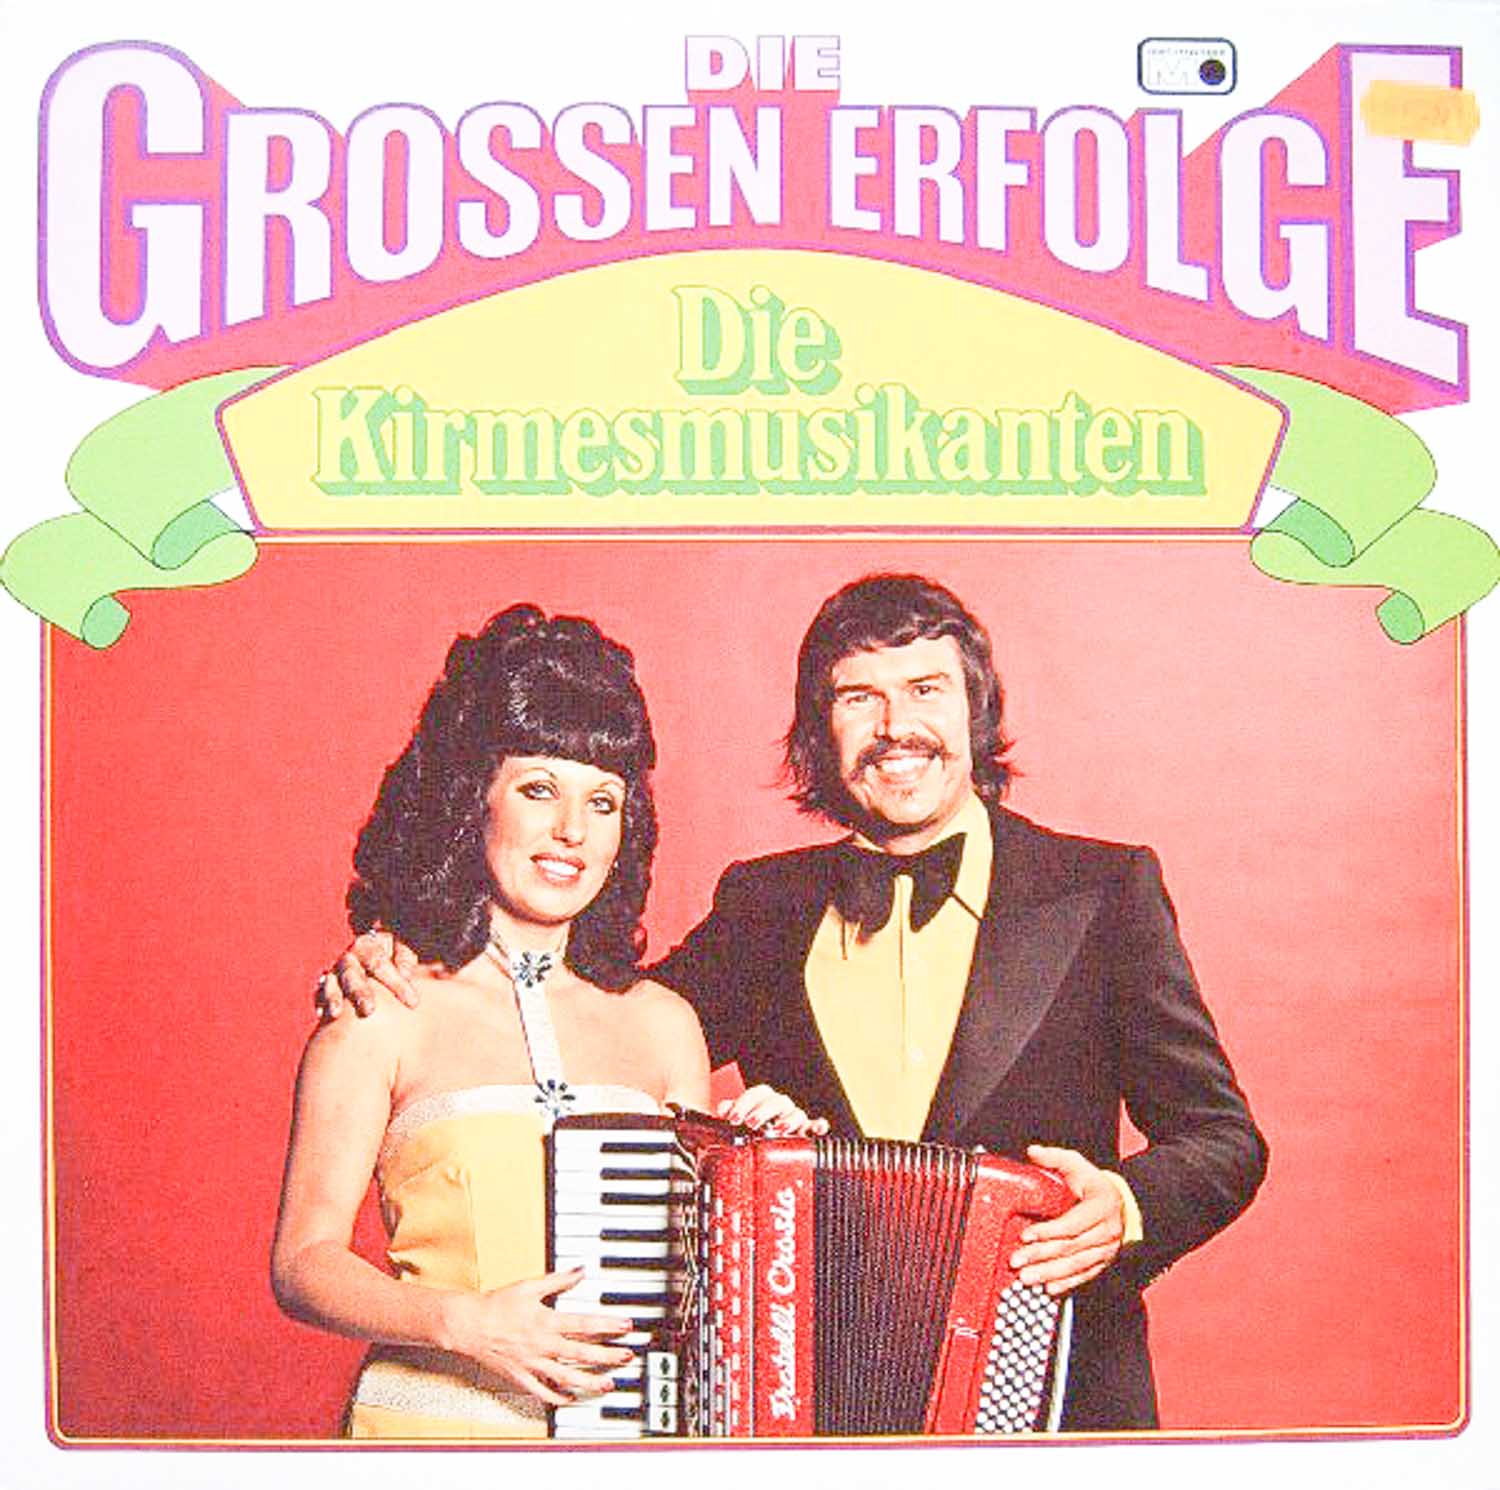 Die Kirmesmusikanten  Die großen Erfolge (0040.079)  *LP 12'' (Vinyl)*. 